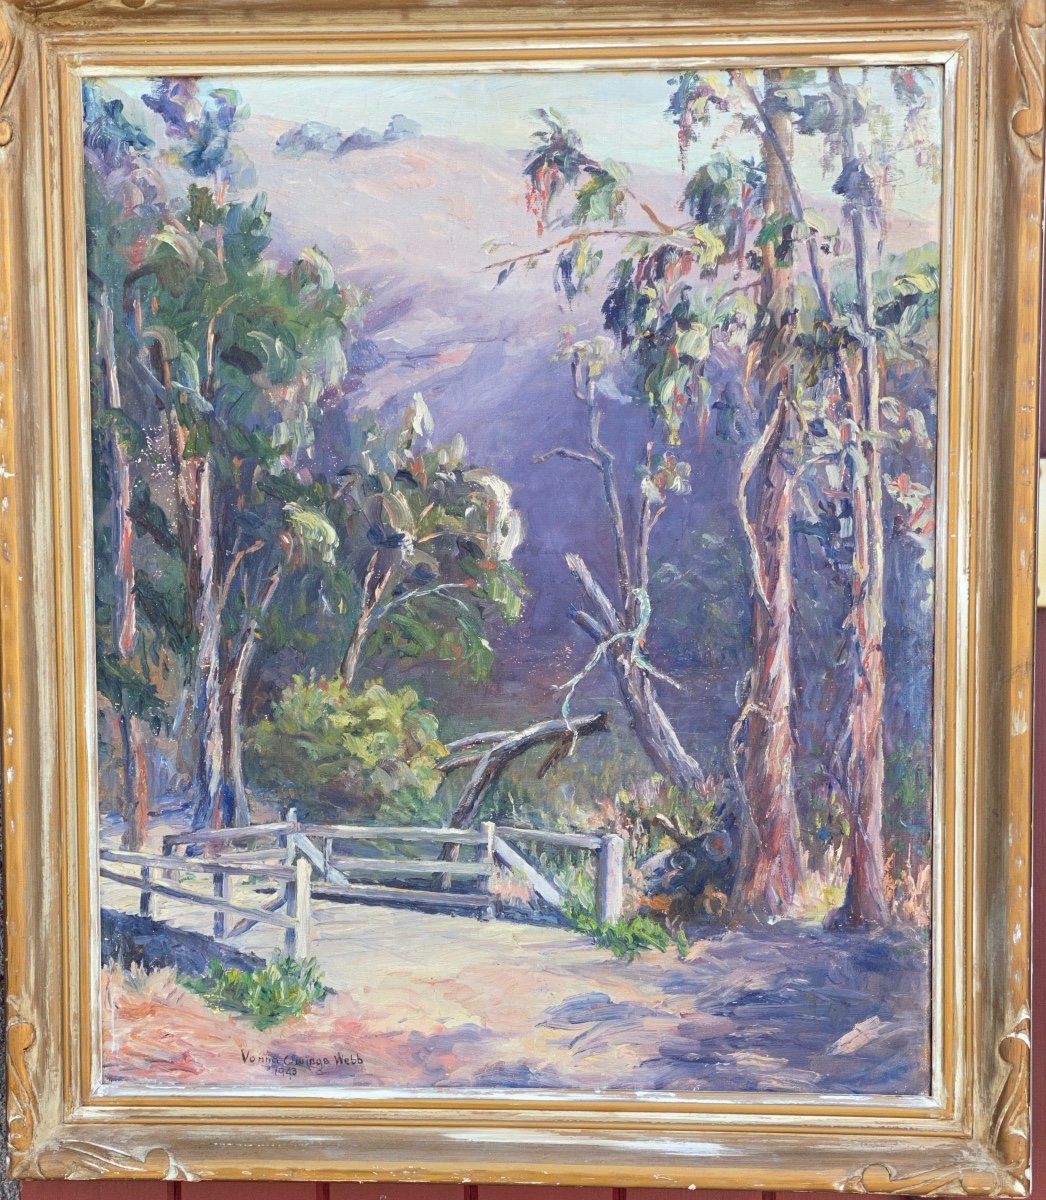 Vonna  Owings Webb  1876-1964   Peintre Impressionniste AmÉricaine  De  La Californie -photo-2